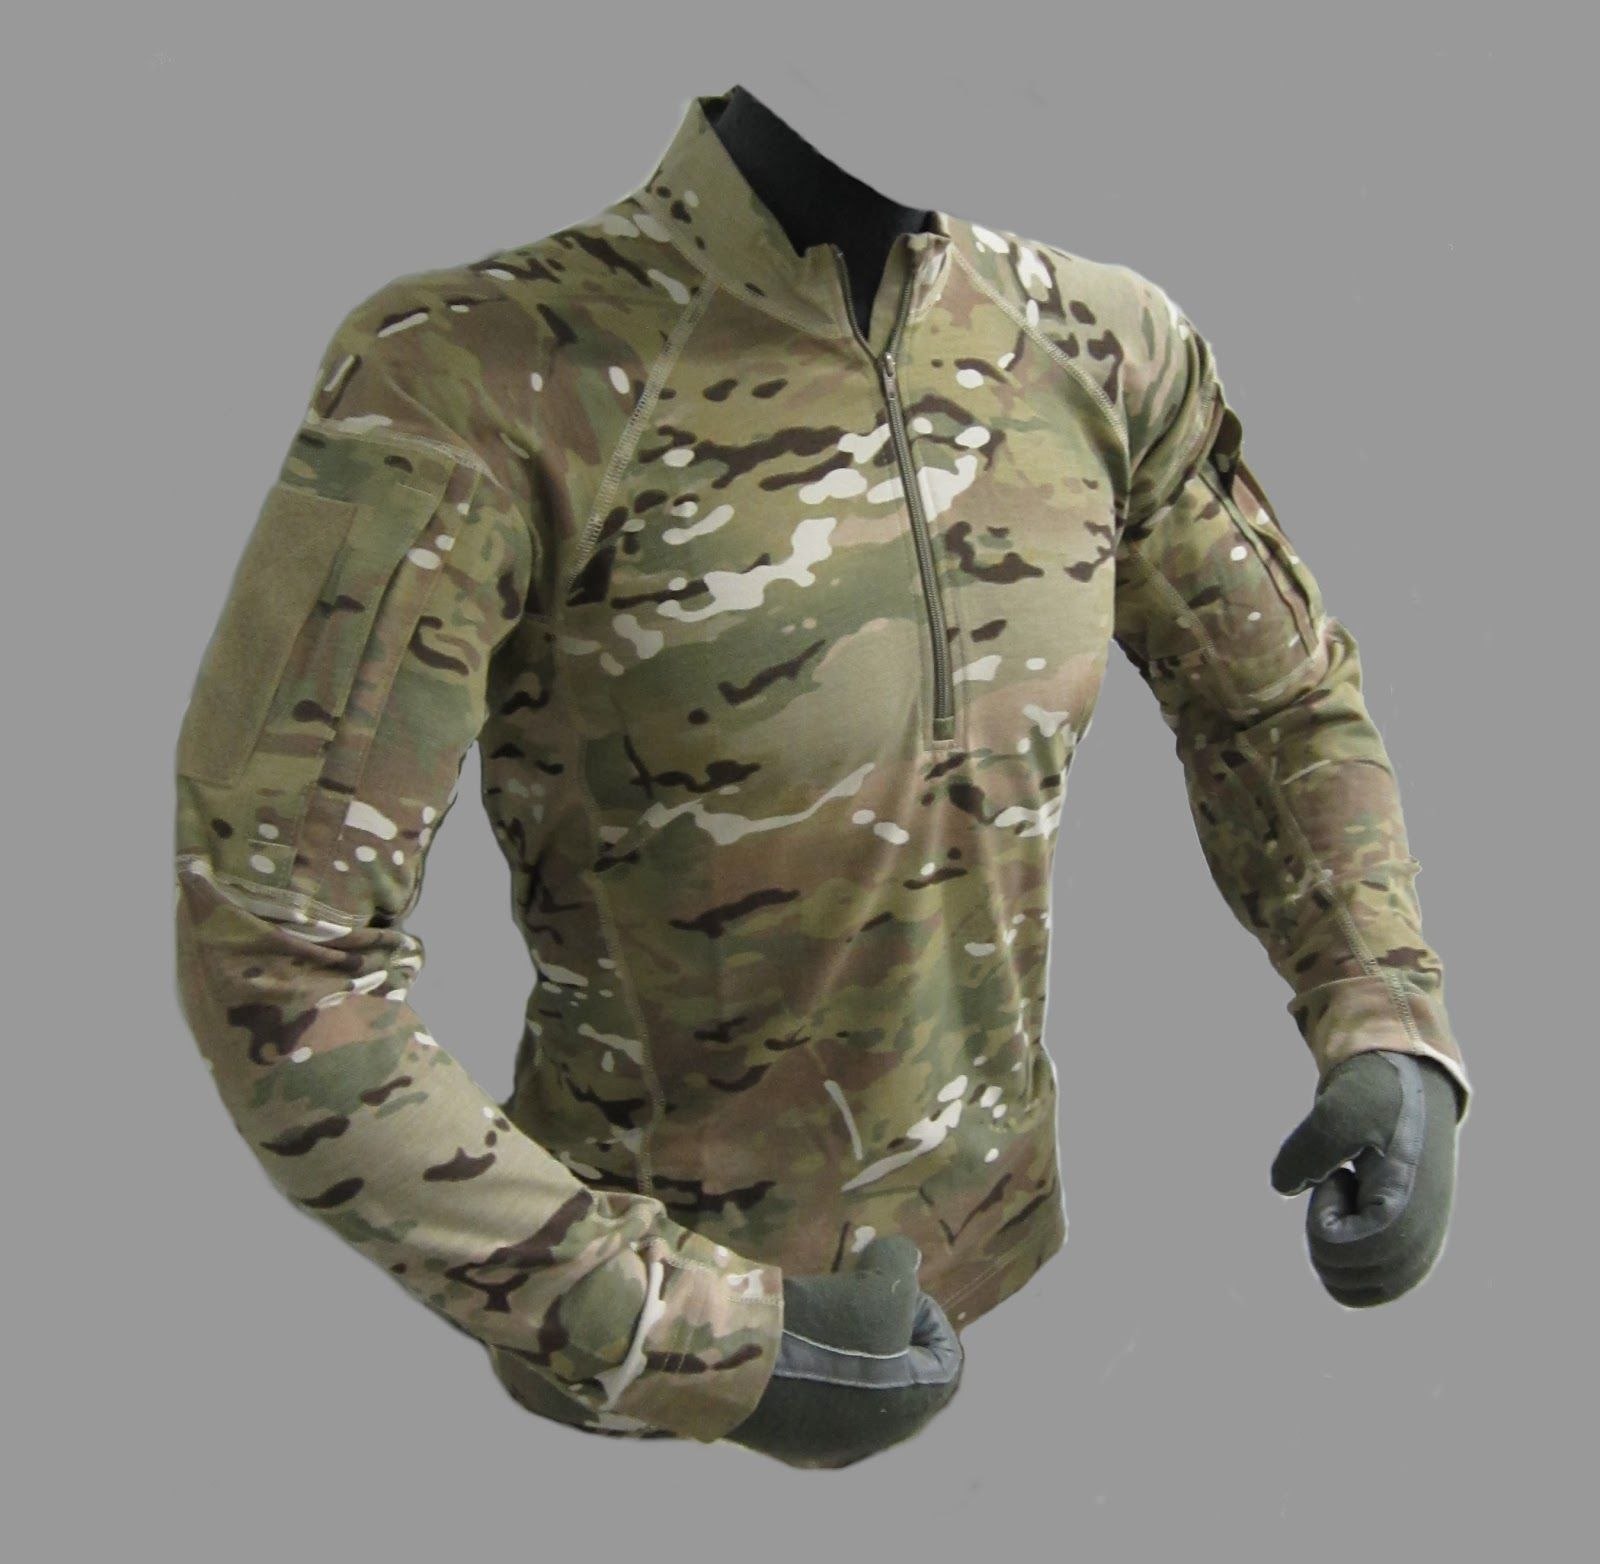 Форма 11 военному. Тактическая одежда Survival Tactical Gear. Милитари рубашка комбат ширт. Костюм g3 Multicam. Sturmer Combat Shirt g3 налокотник.